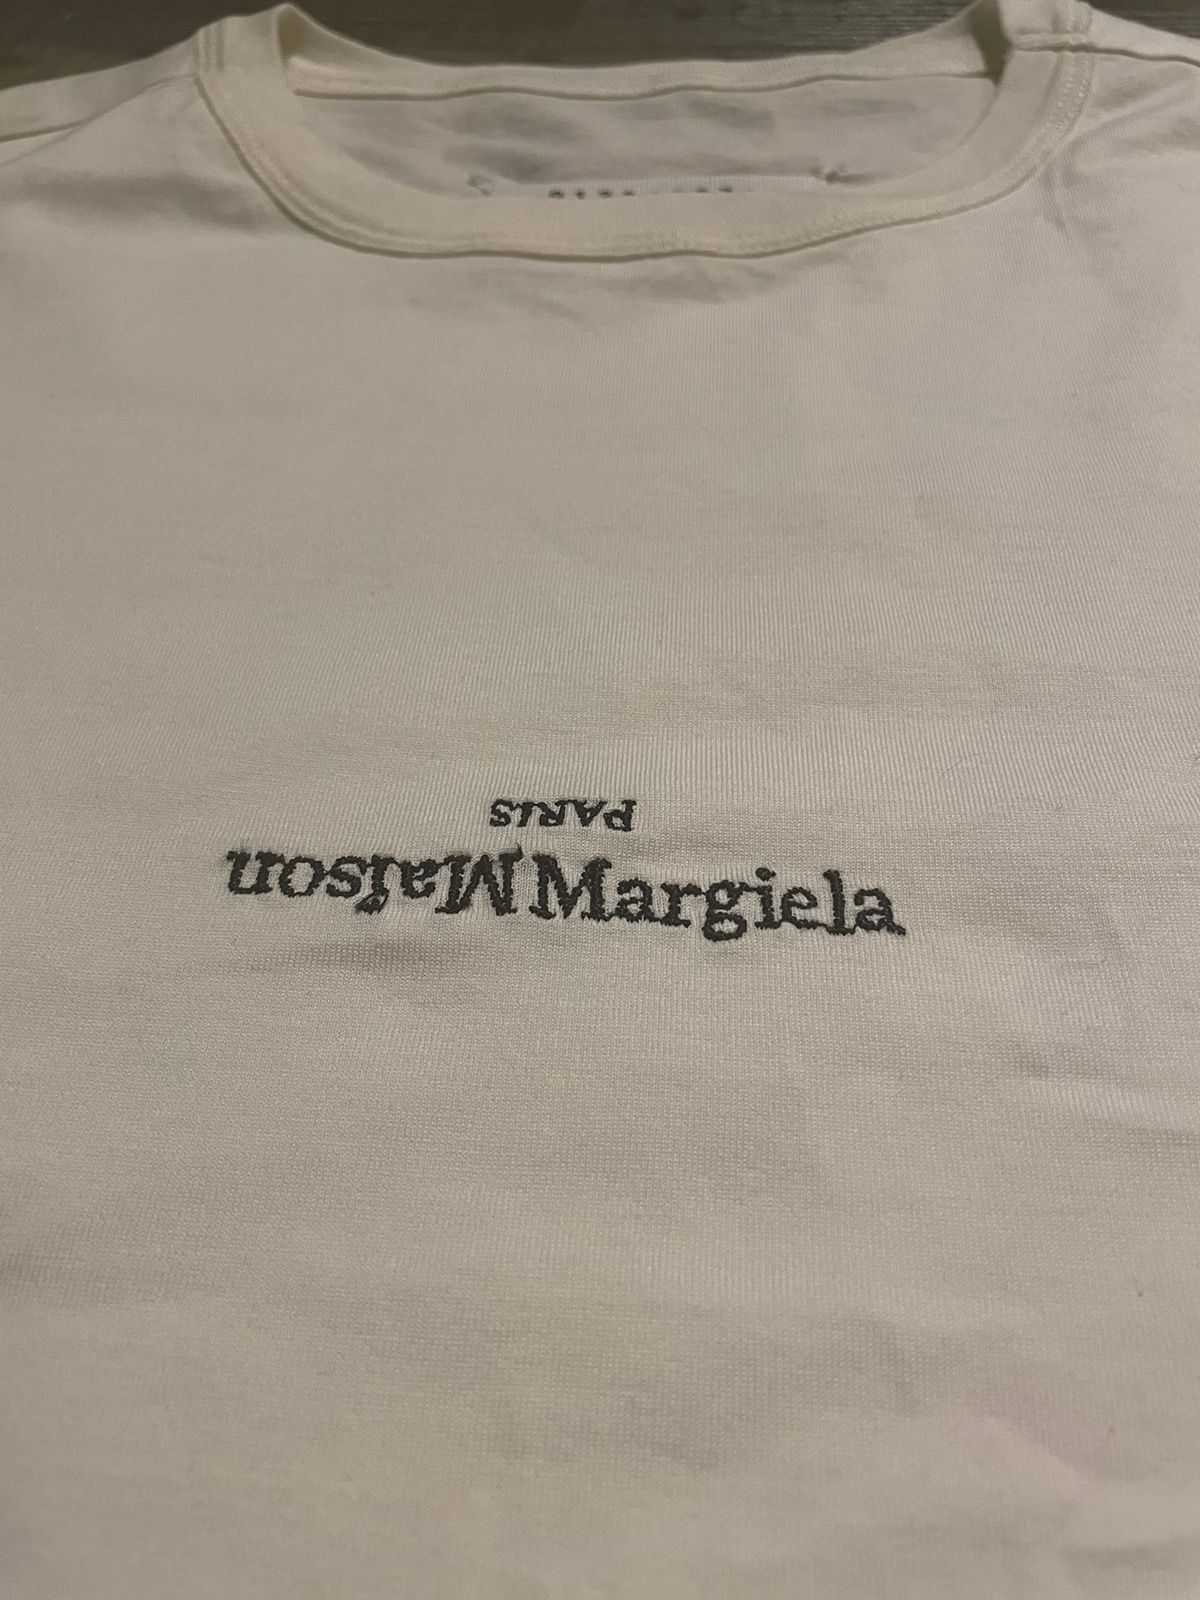 Maison Margiela Maison Margiela White Cotton T-Shirt Size US S / EU 44-46 / 1 - 2 Preview